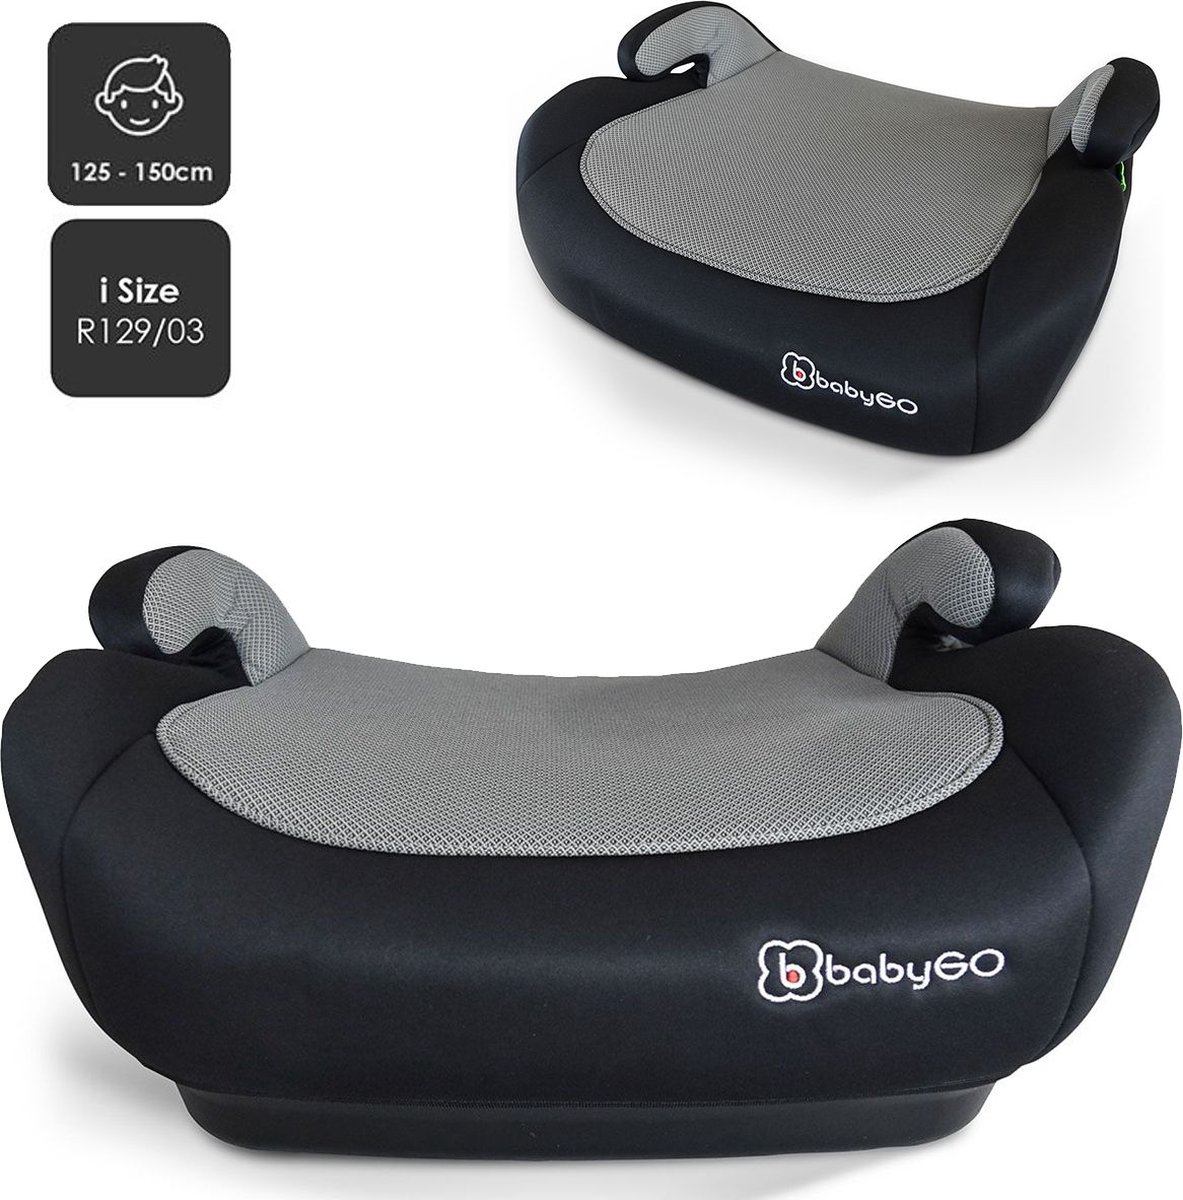 BabyGO autostoel Booster iSize - Zitverhoger - Stoelverhoger - Autogordel bevestiging - Zwart Melange (voor kinderen van 125 - 150cm) - BabyGO